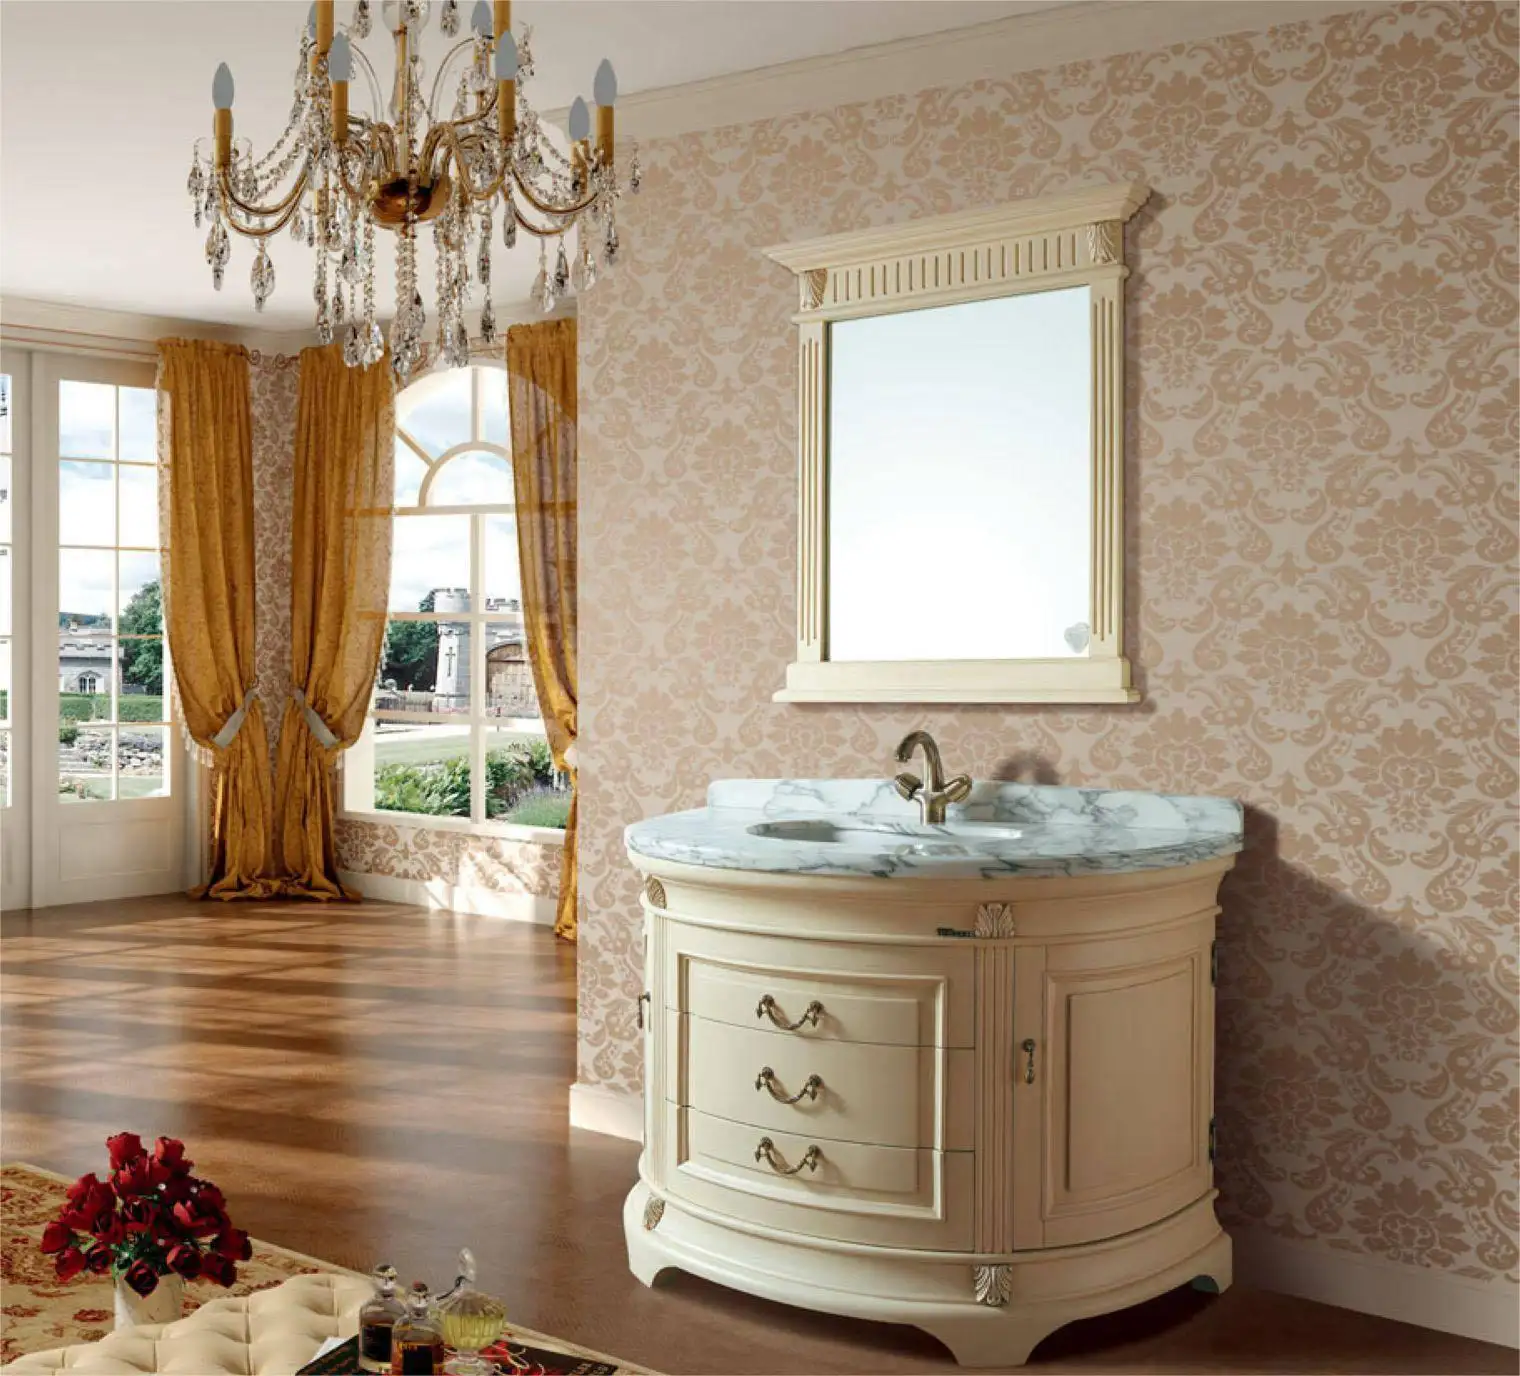 Mobile bagno stile reale splendido di alta qualità impermeabile tutto in legno massiccio vernice stile palazzo